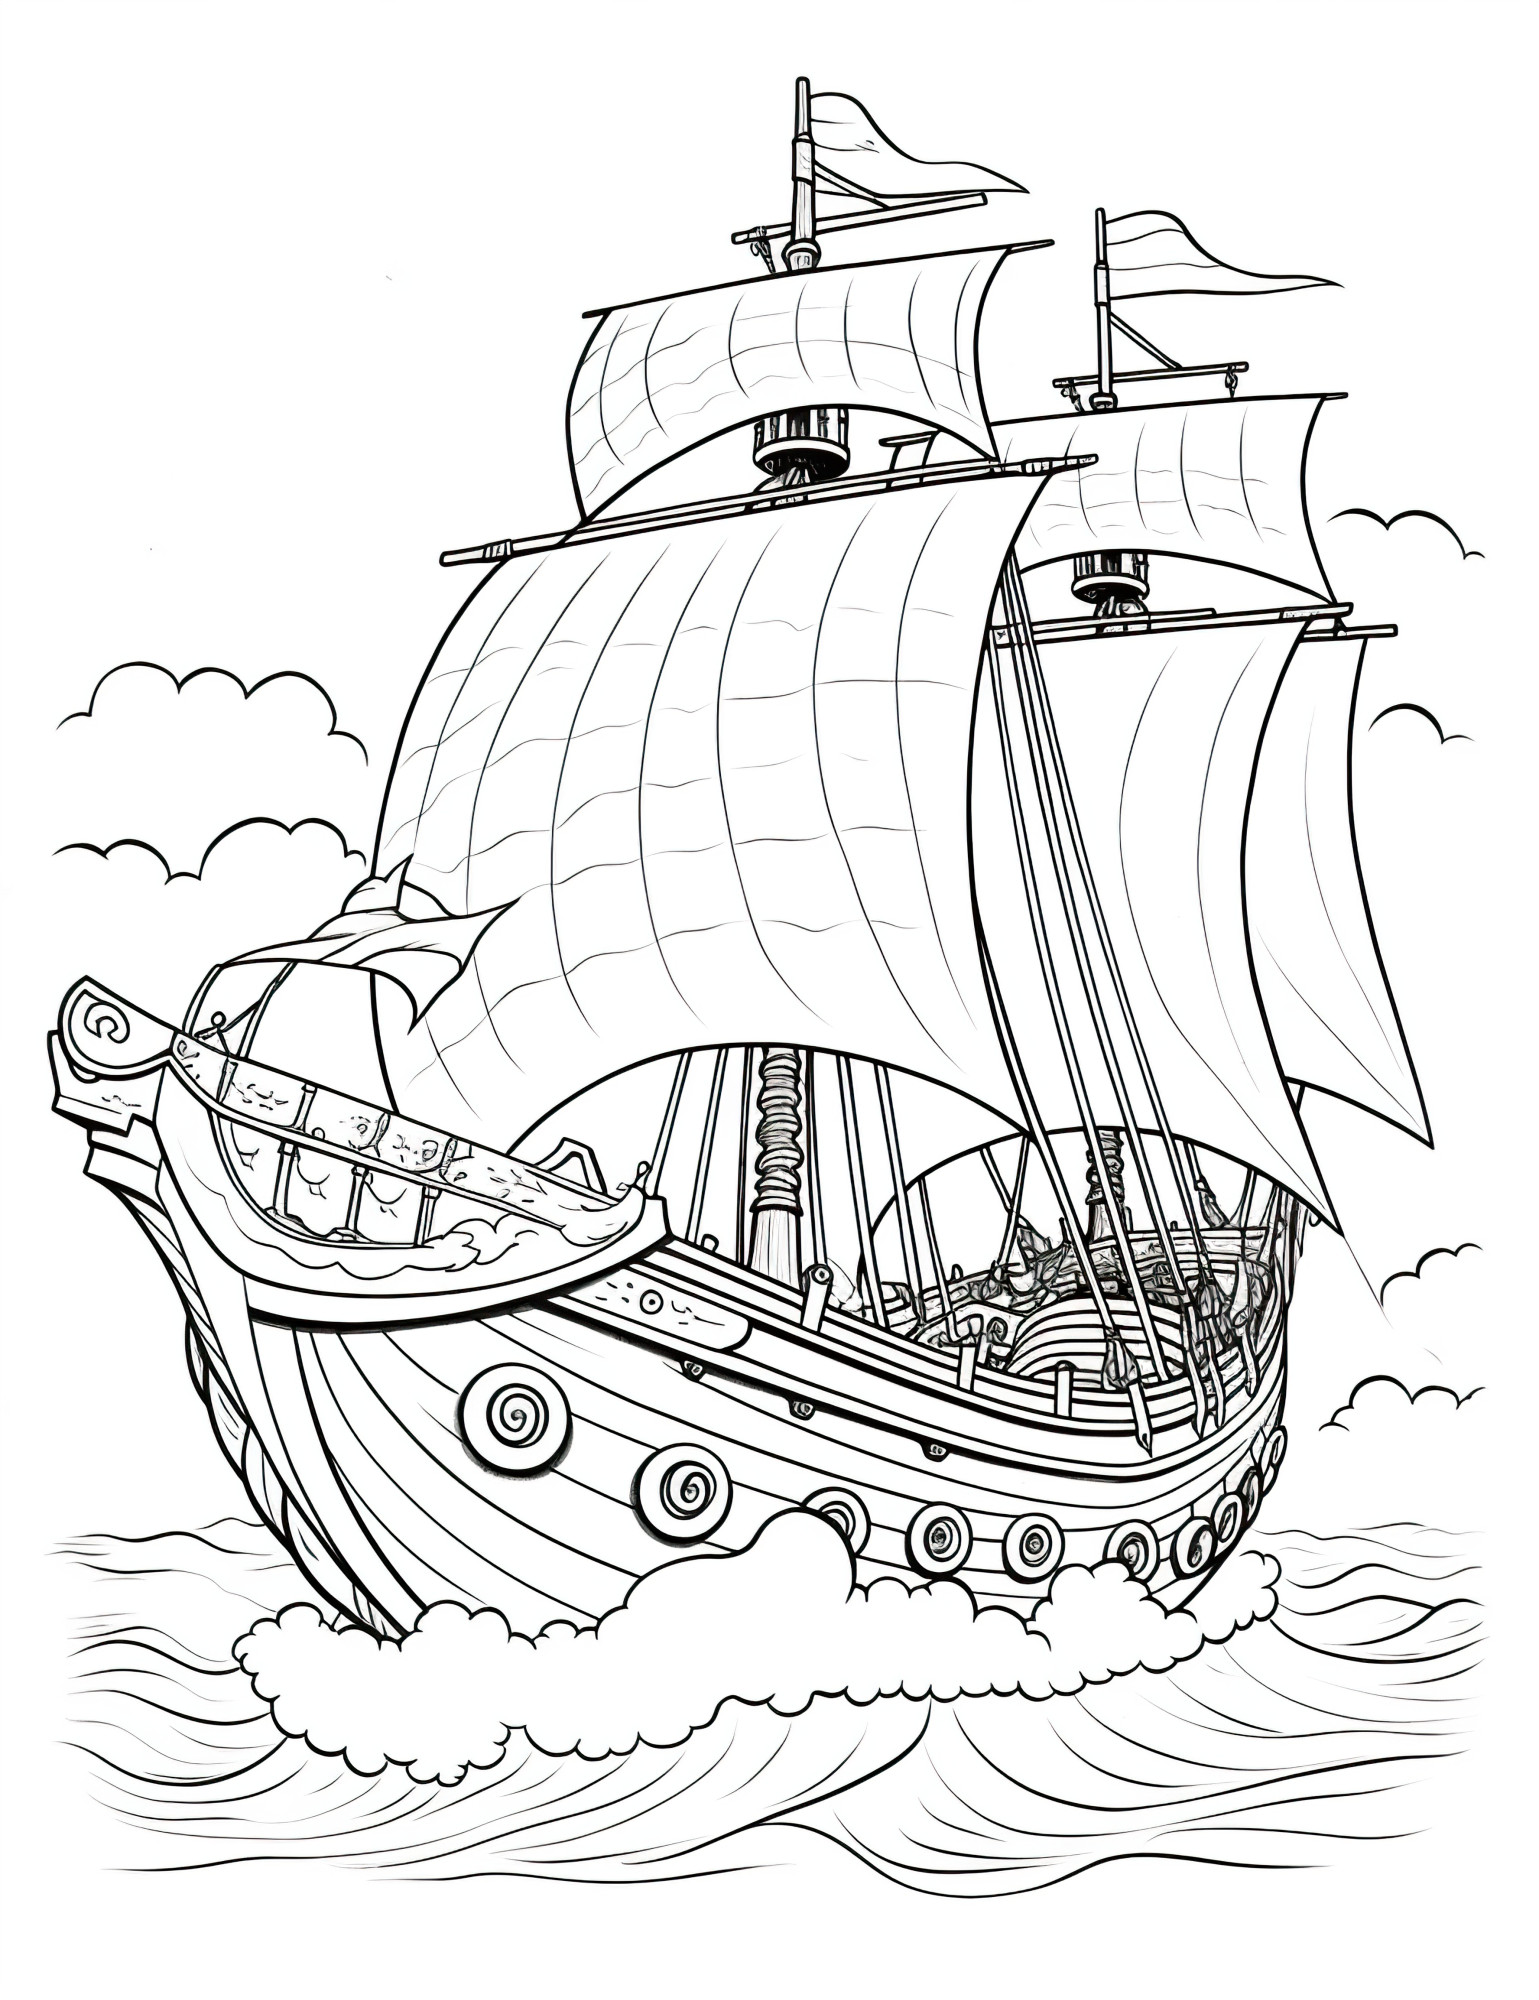 Раскраска для детей: корабль плывущий по океану